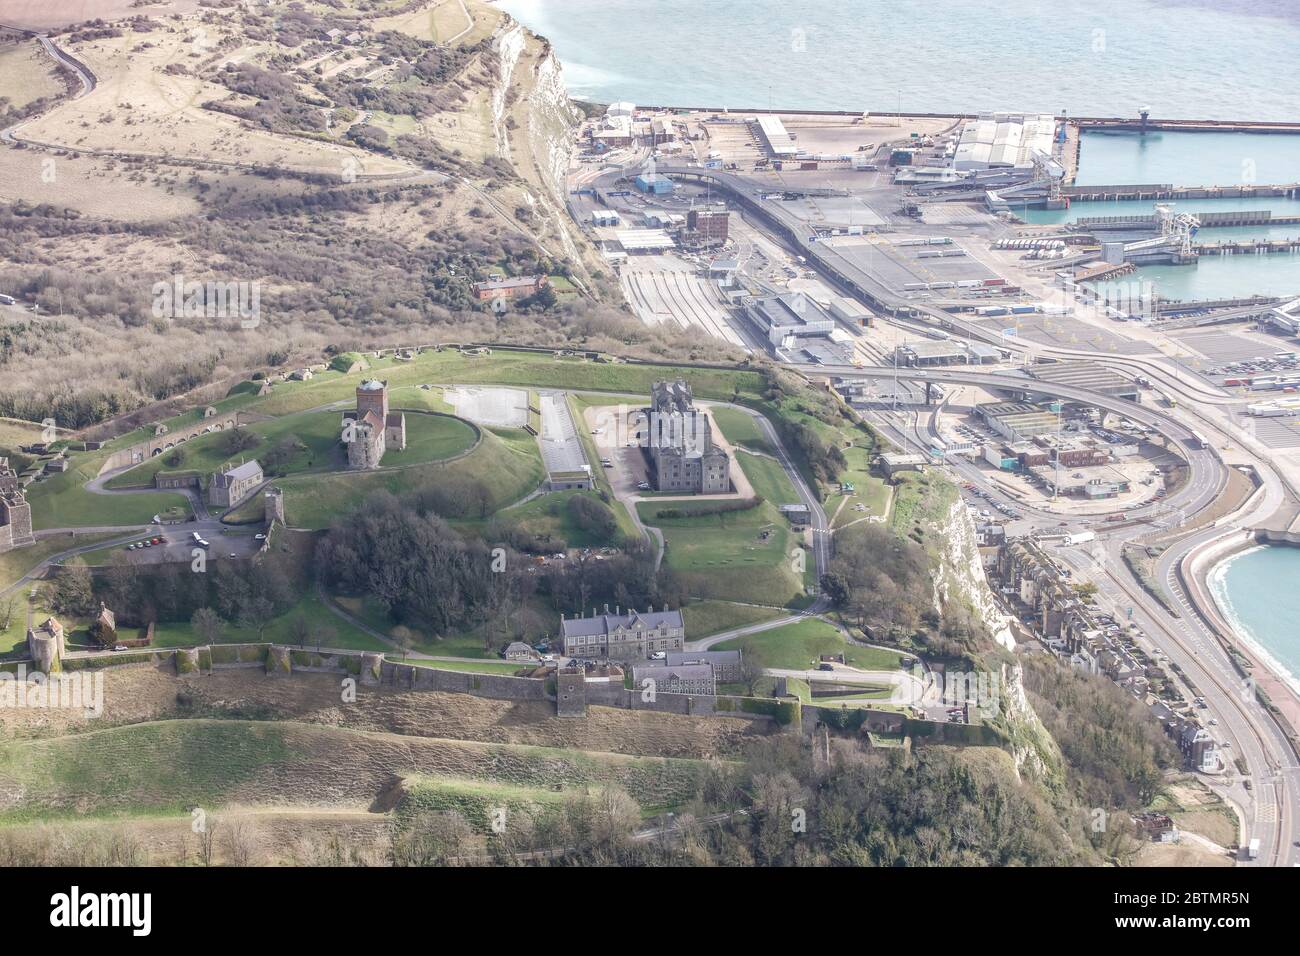 Vue aérienne du château de Douvres et du port de Douvres, Angleterre Banque D'Images